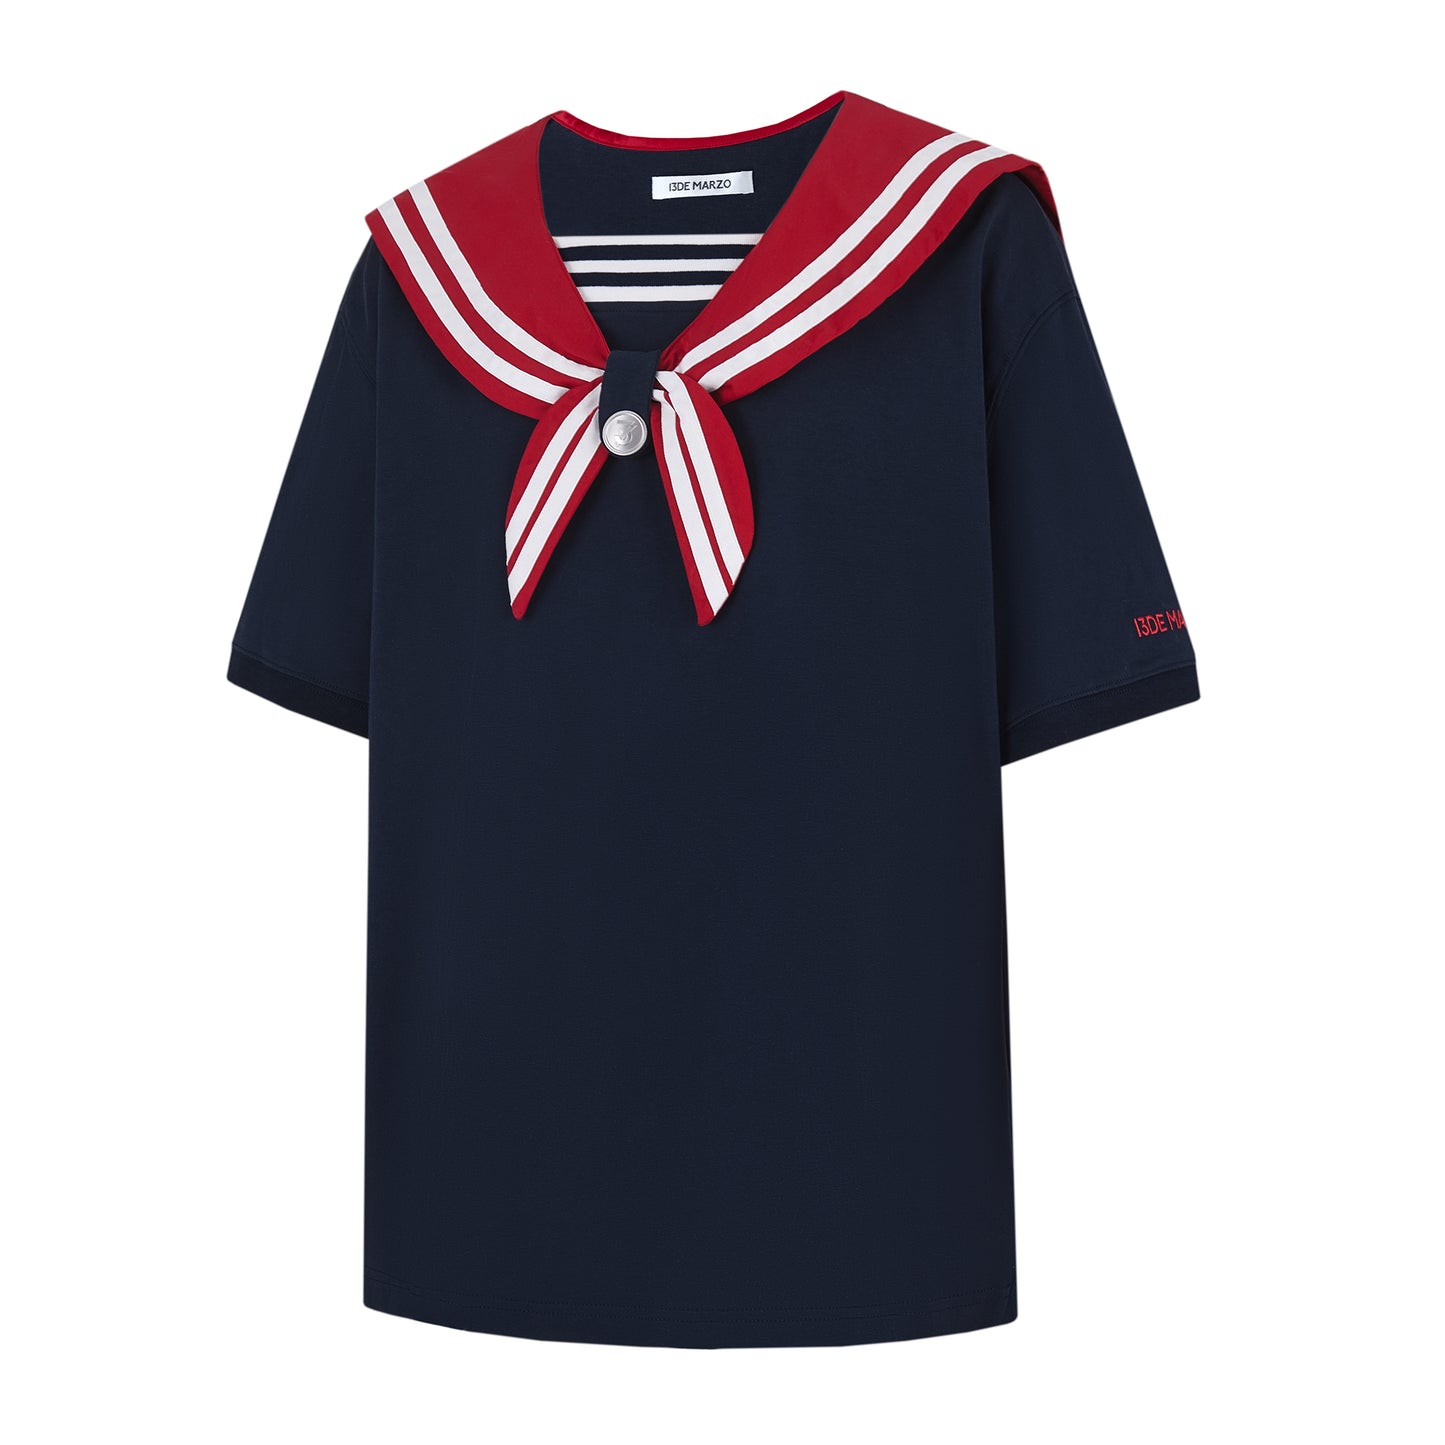 13DE MARZO Bear Sailor T-shirt